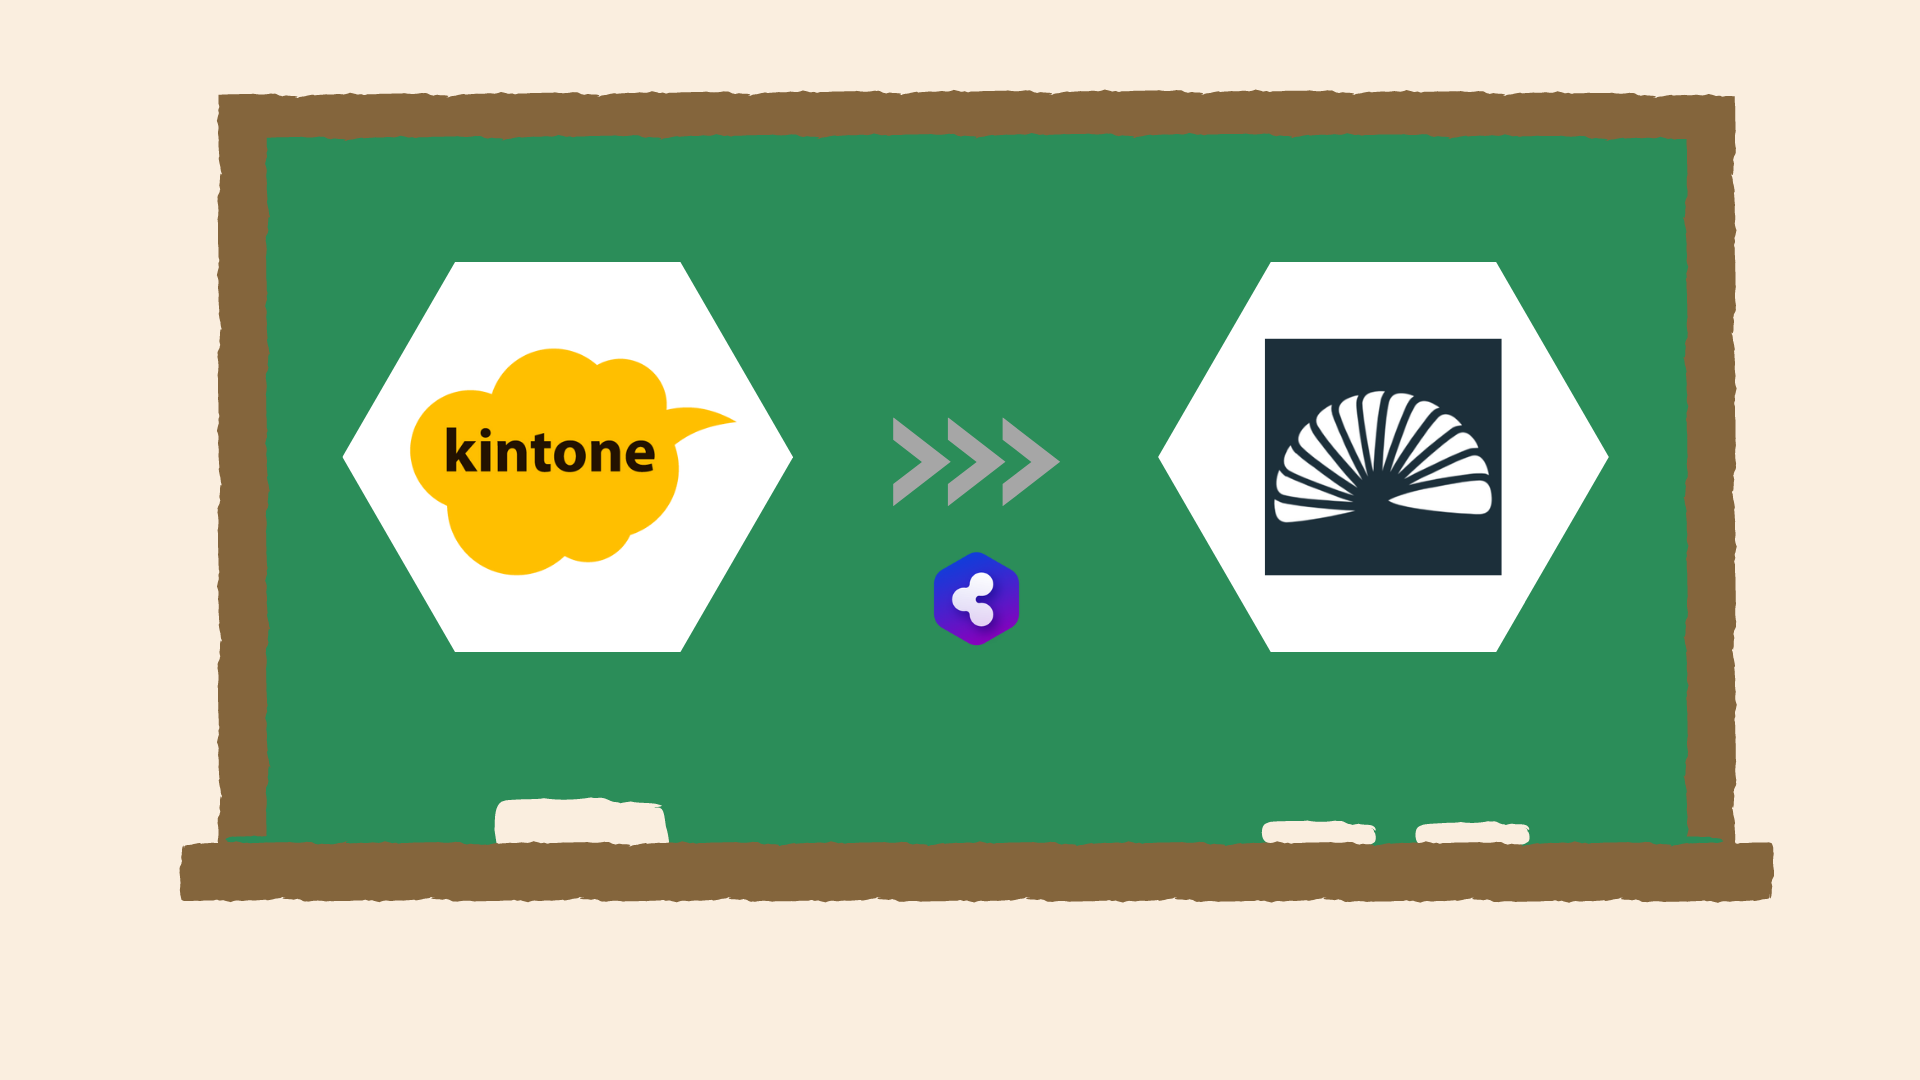 kintone→SENSES